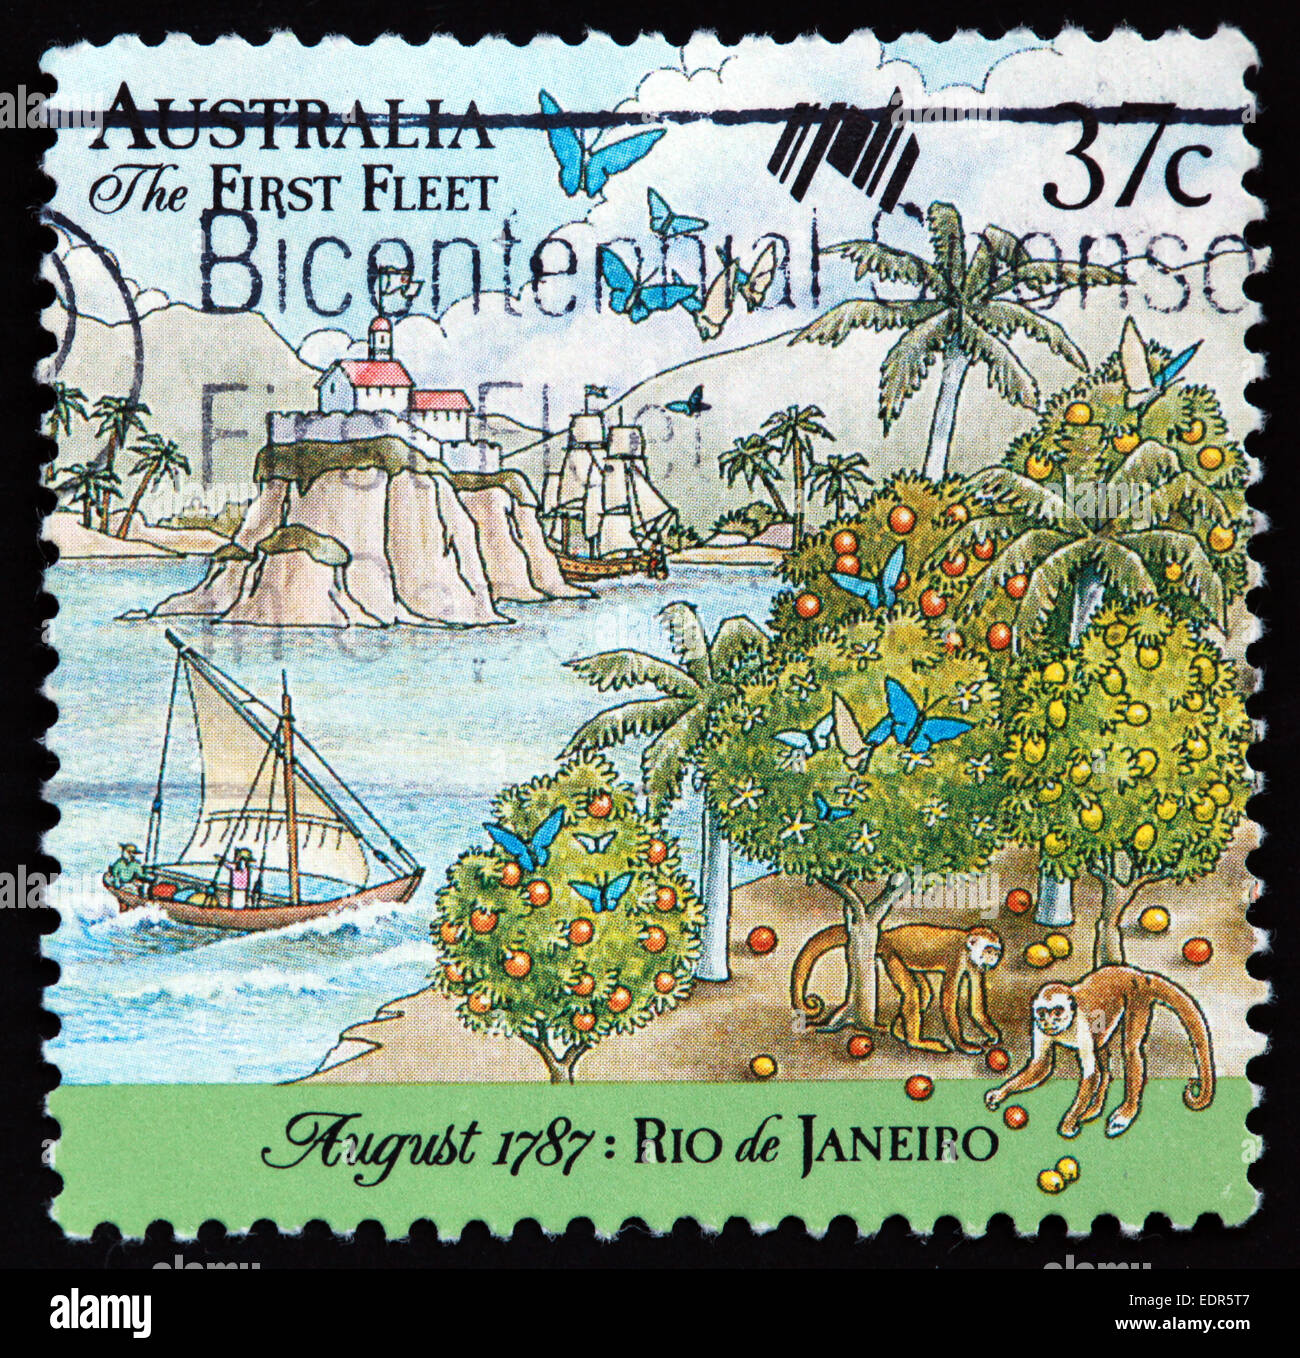 Utilisé et oblitérée Australie / Austrailian Stamp 37c la première flotte d'août 1787 Rio de Janeiro Banque D'Images